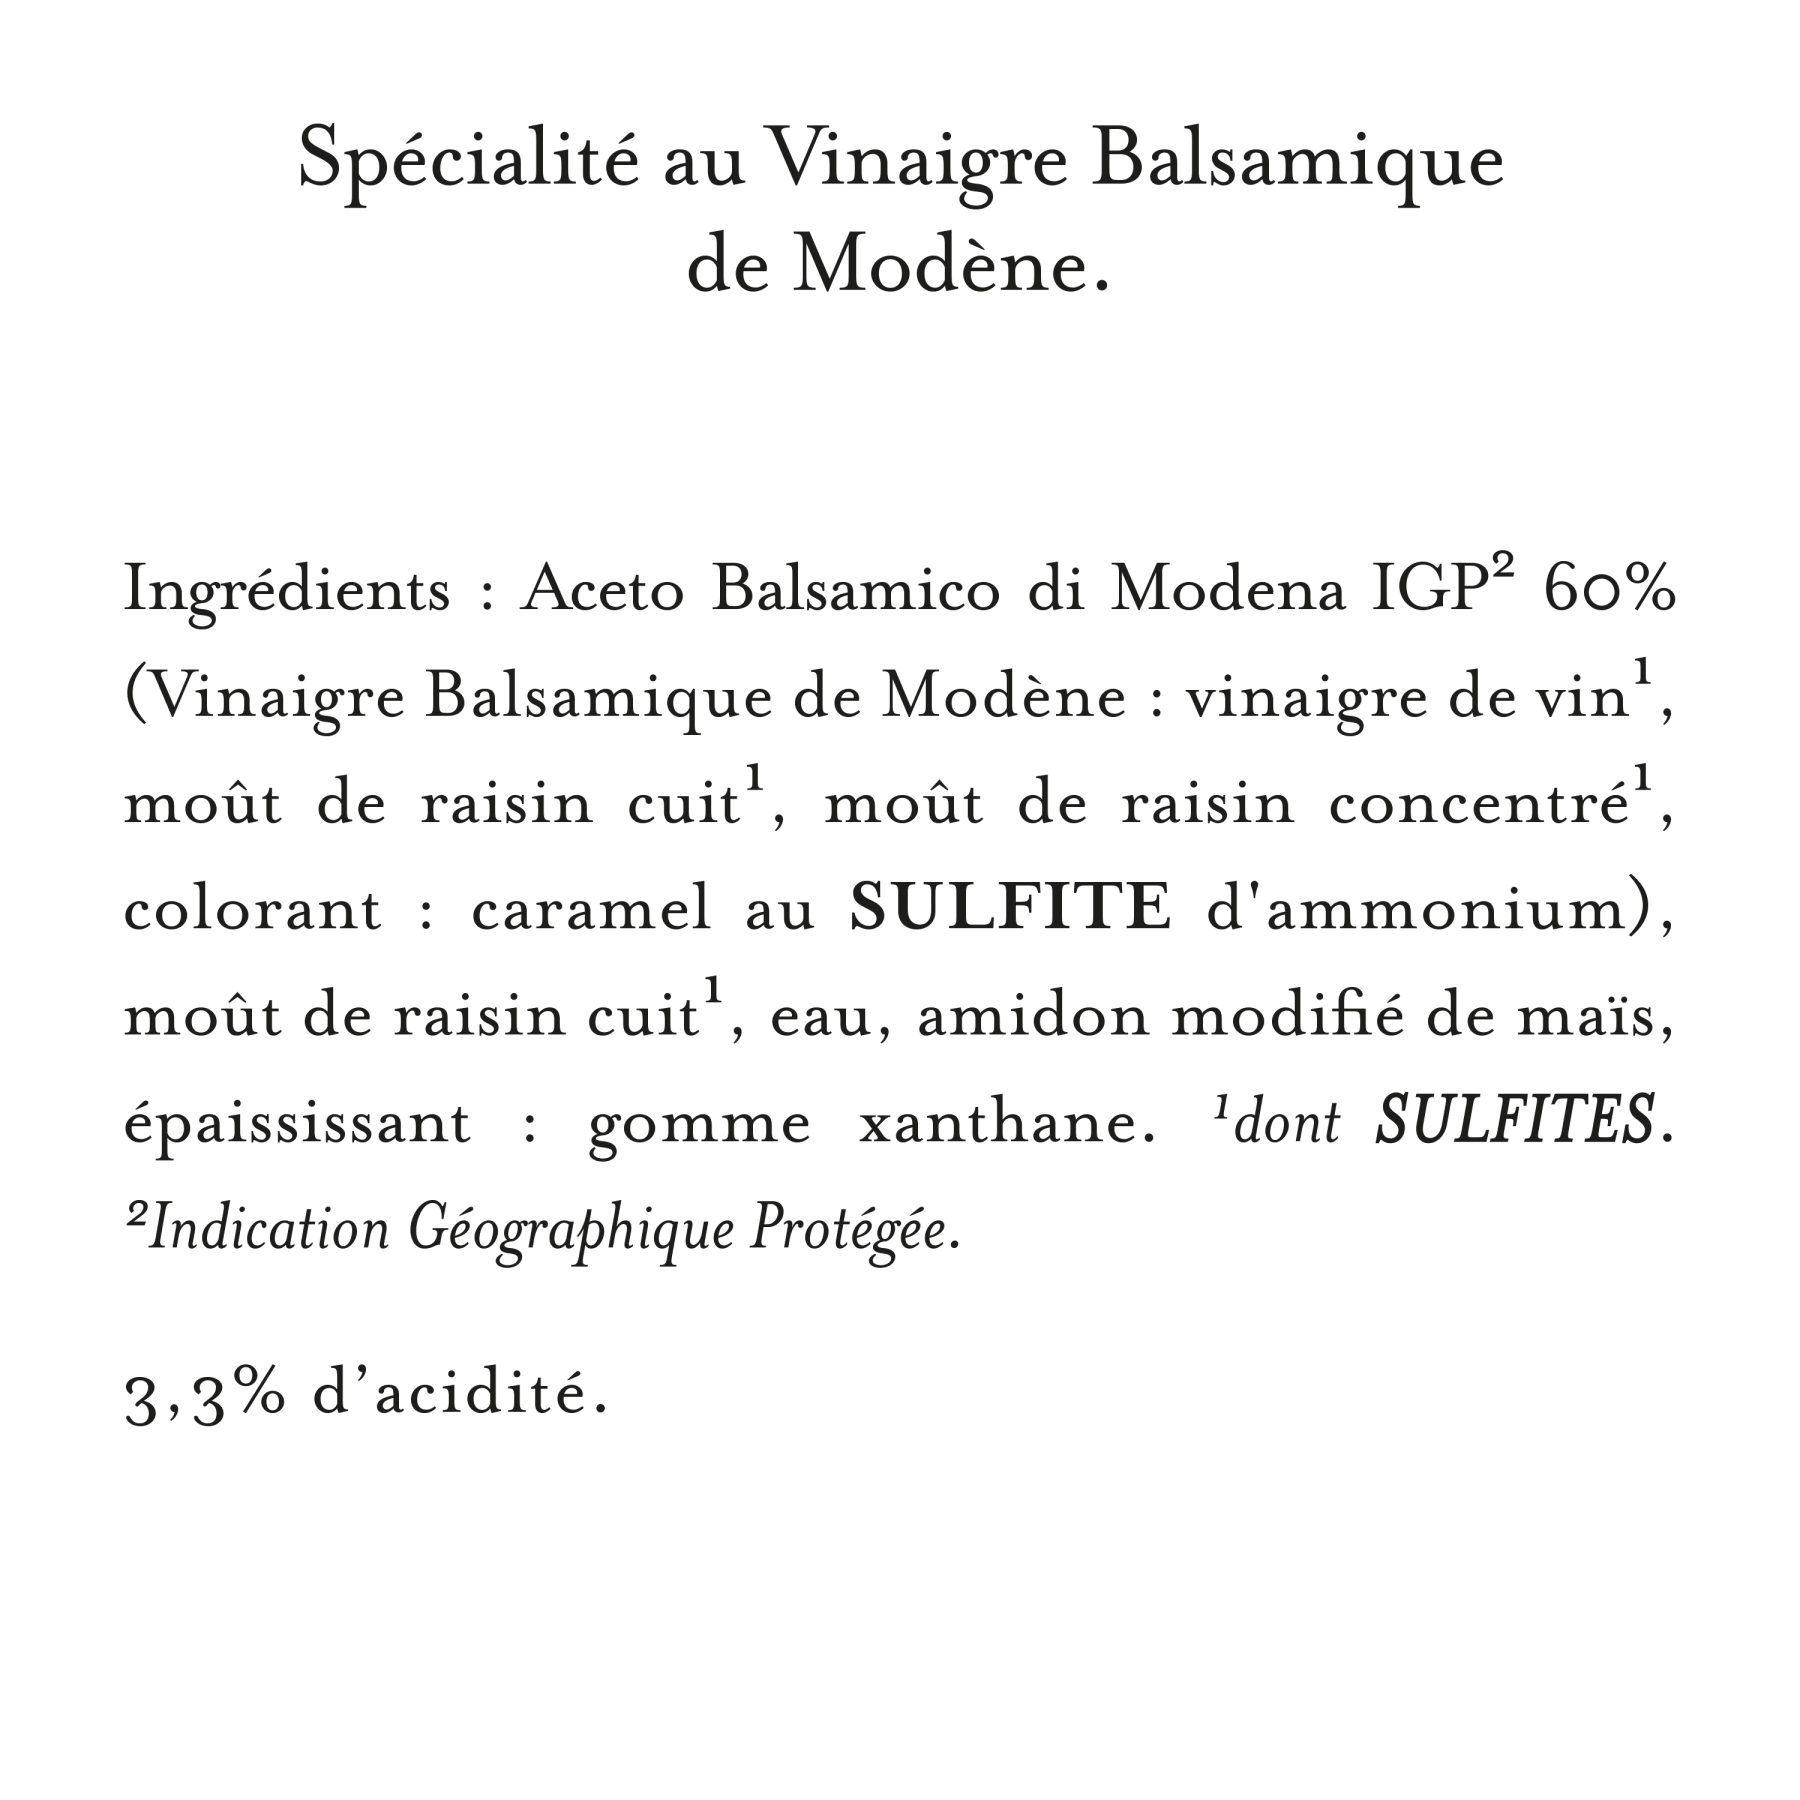 Maille - Velours de Vinaigre Balsamique De Modène 25 cl